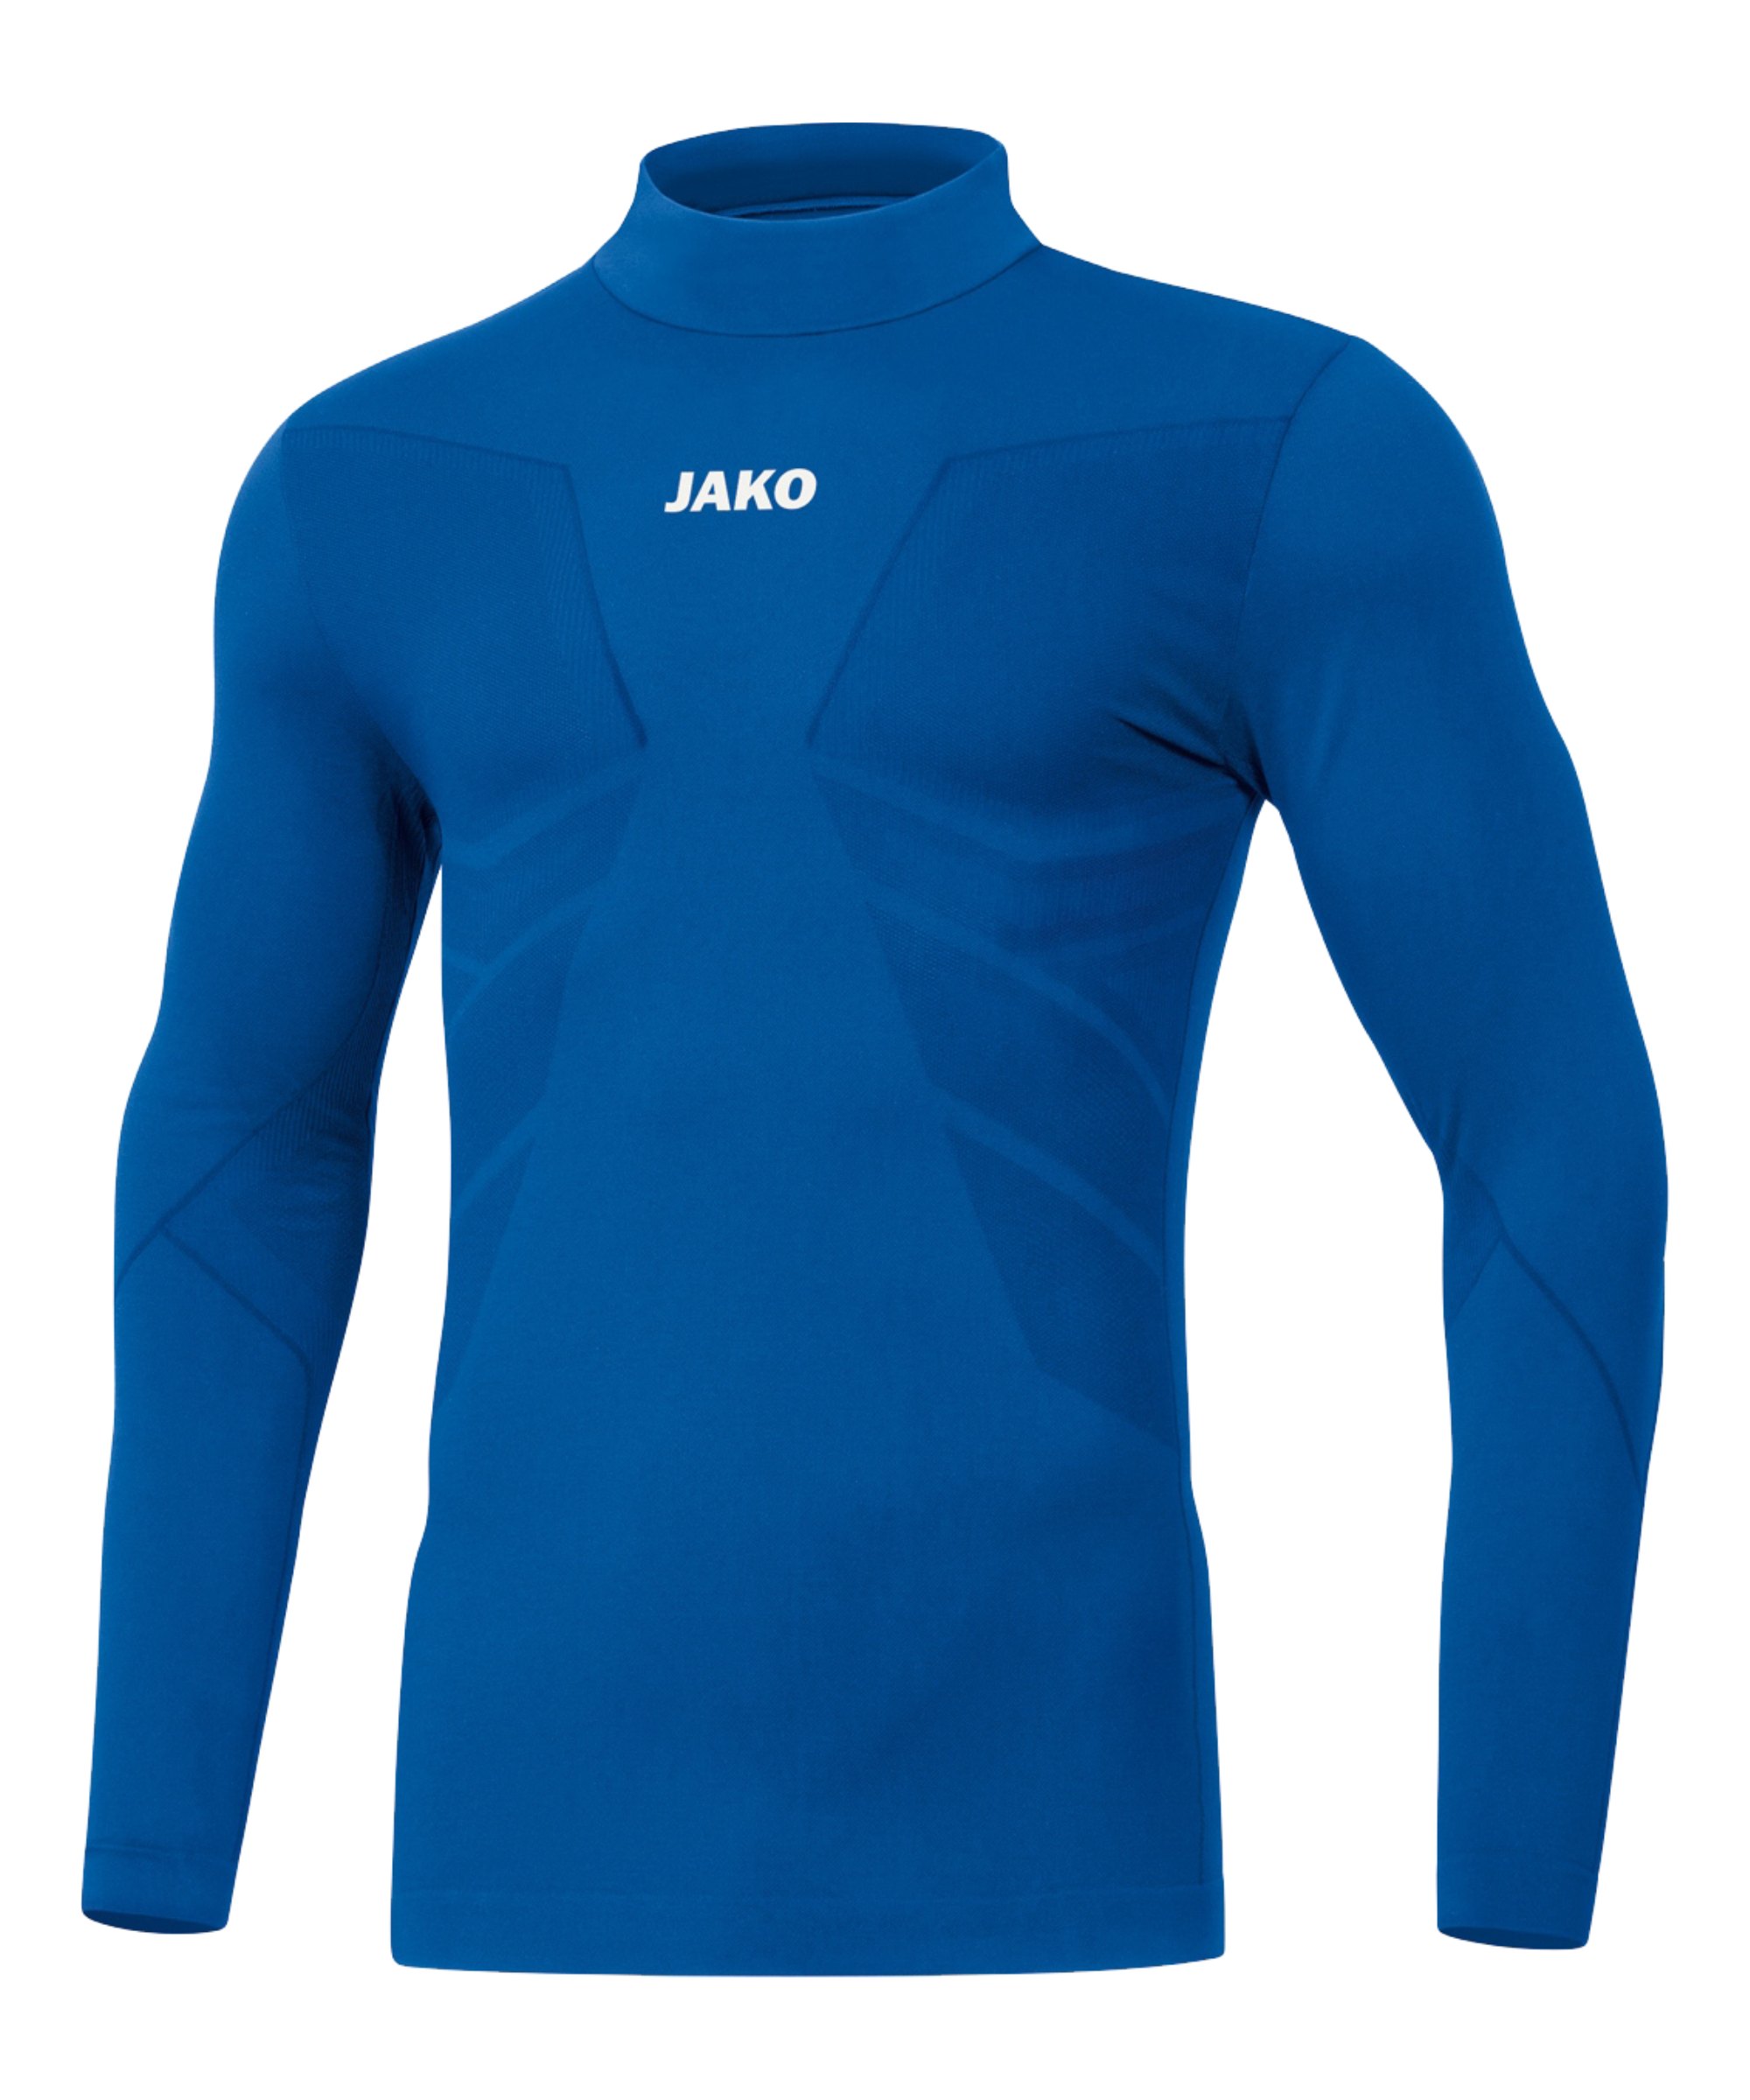 JAKO Comfort 2.0 Turtleneck Blau F04 - blau